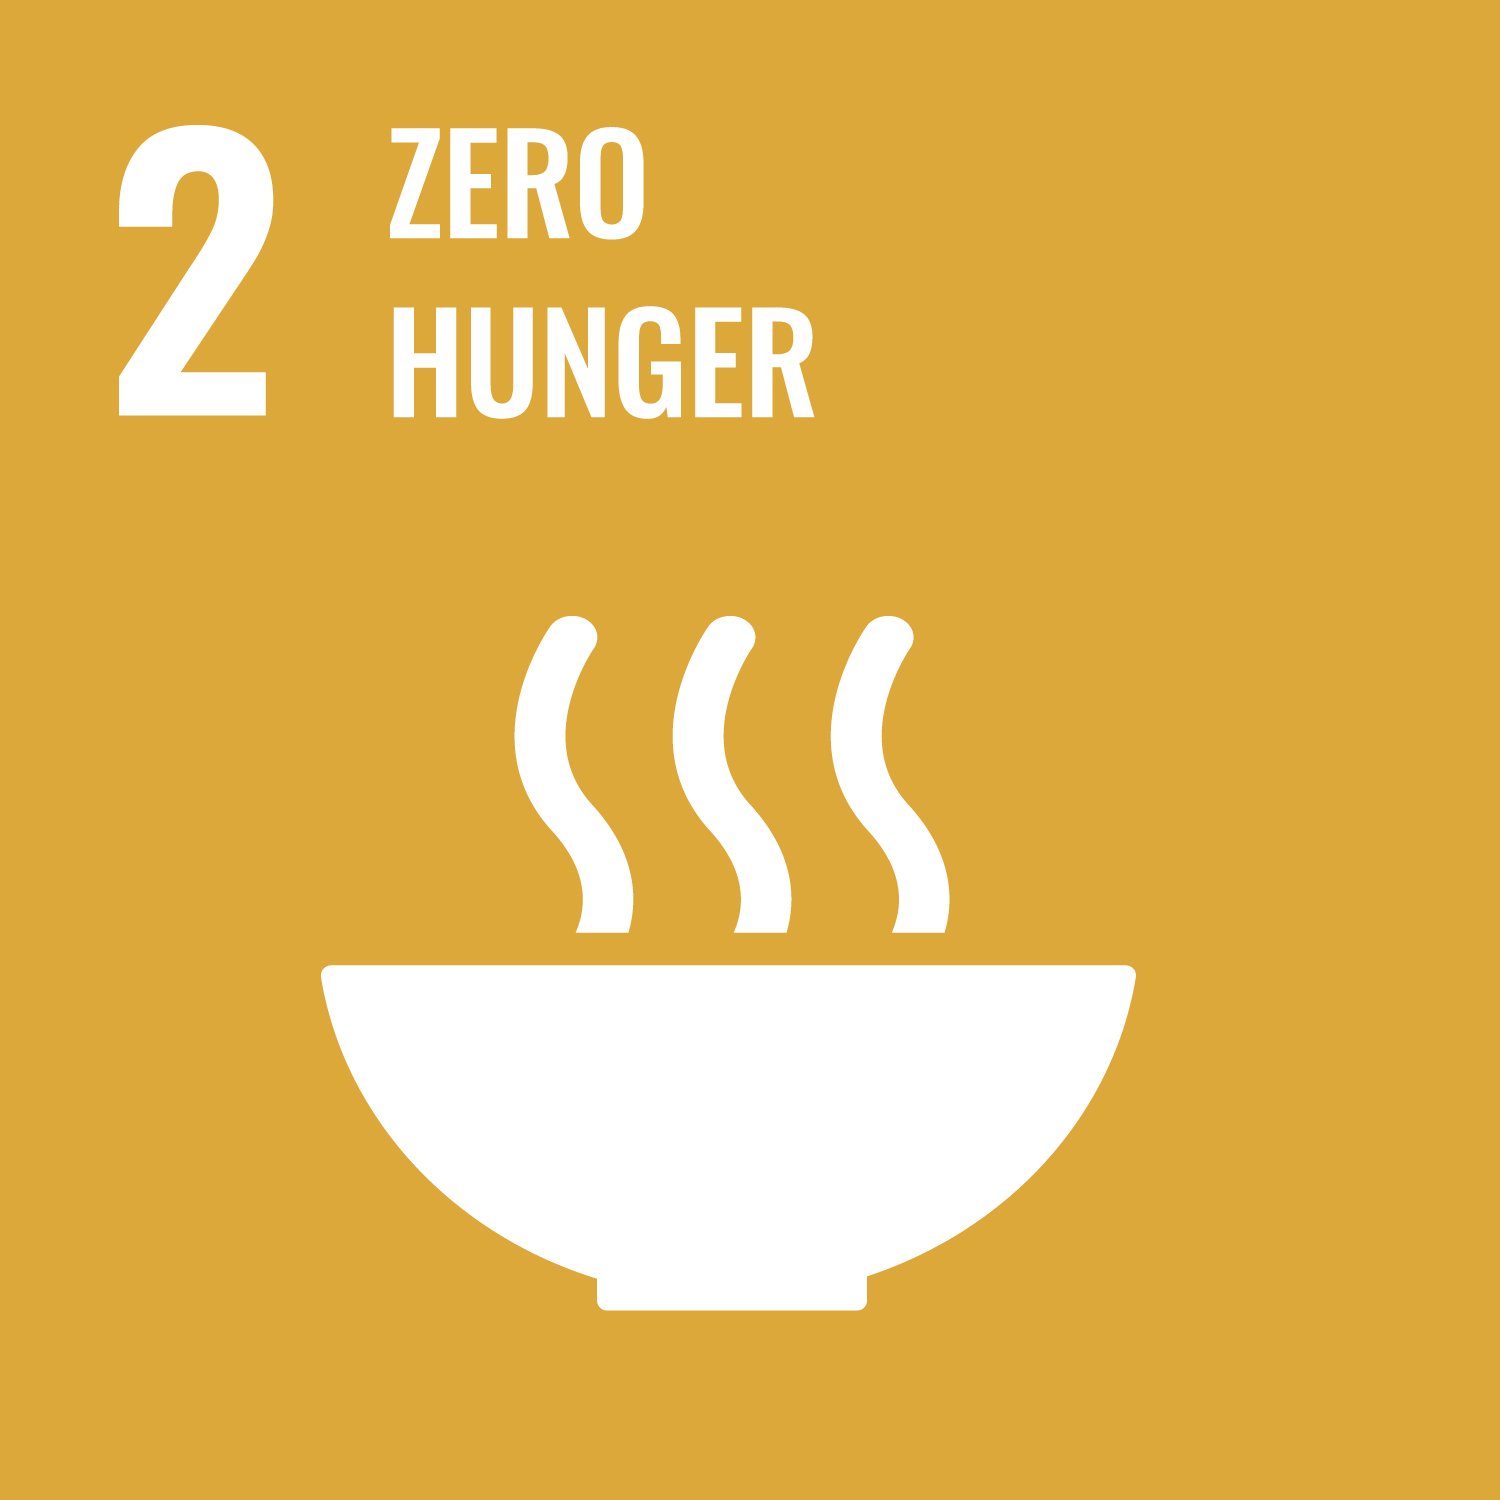 UN Agenda 2030 SDG 2 Zero hunger icon.